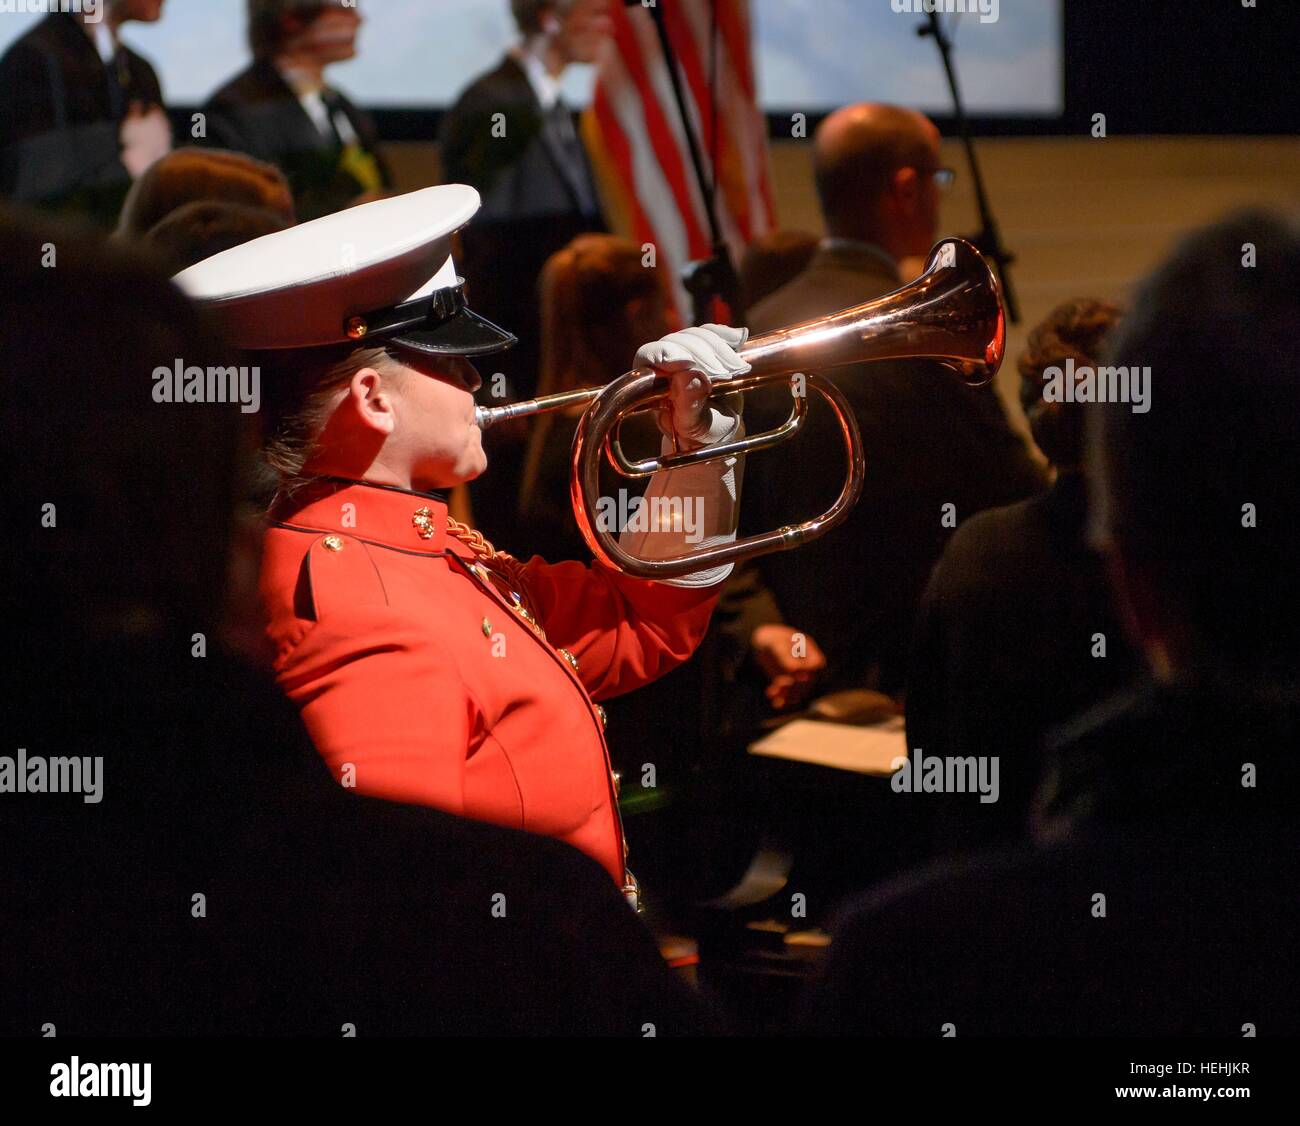 Soldat der US-Marine spielt Hähne auf einer Trompete während der Trauerfeier feiert das Leben des ehemaligen NASA-Astronaut und US-Senator John Glenn an der Ohio State University Mershon Auditorium 17. Dezember 2016 in Columbus, Ohio. Stockfoto